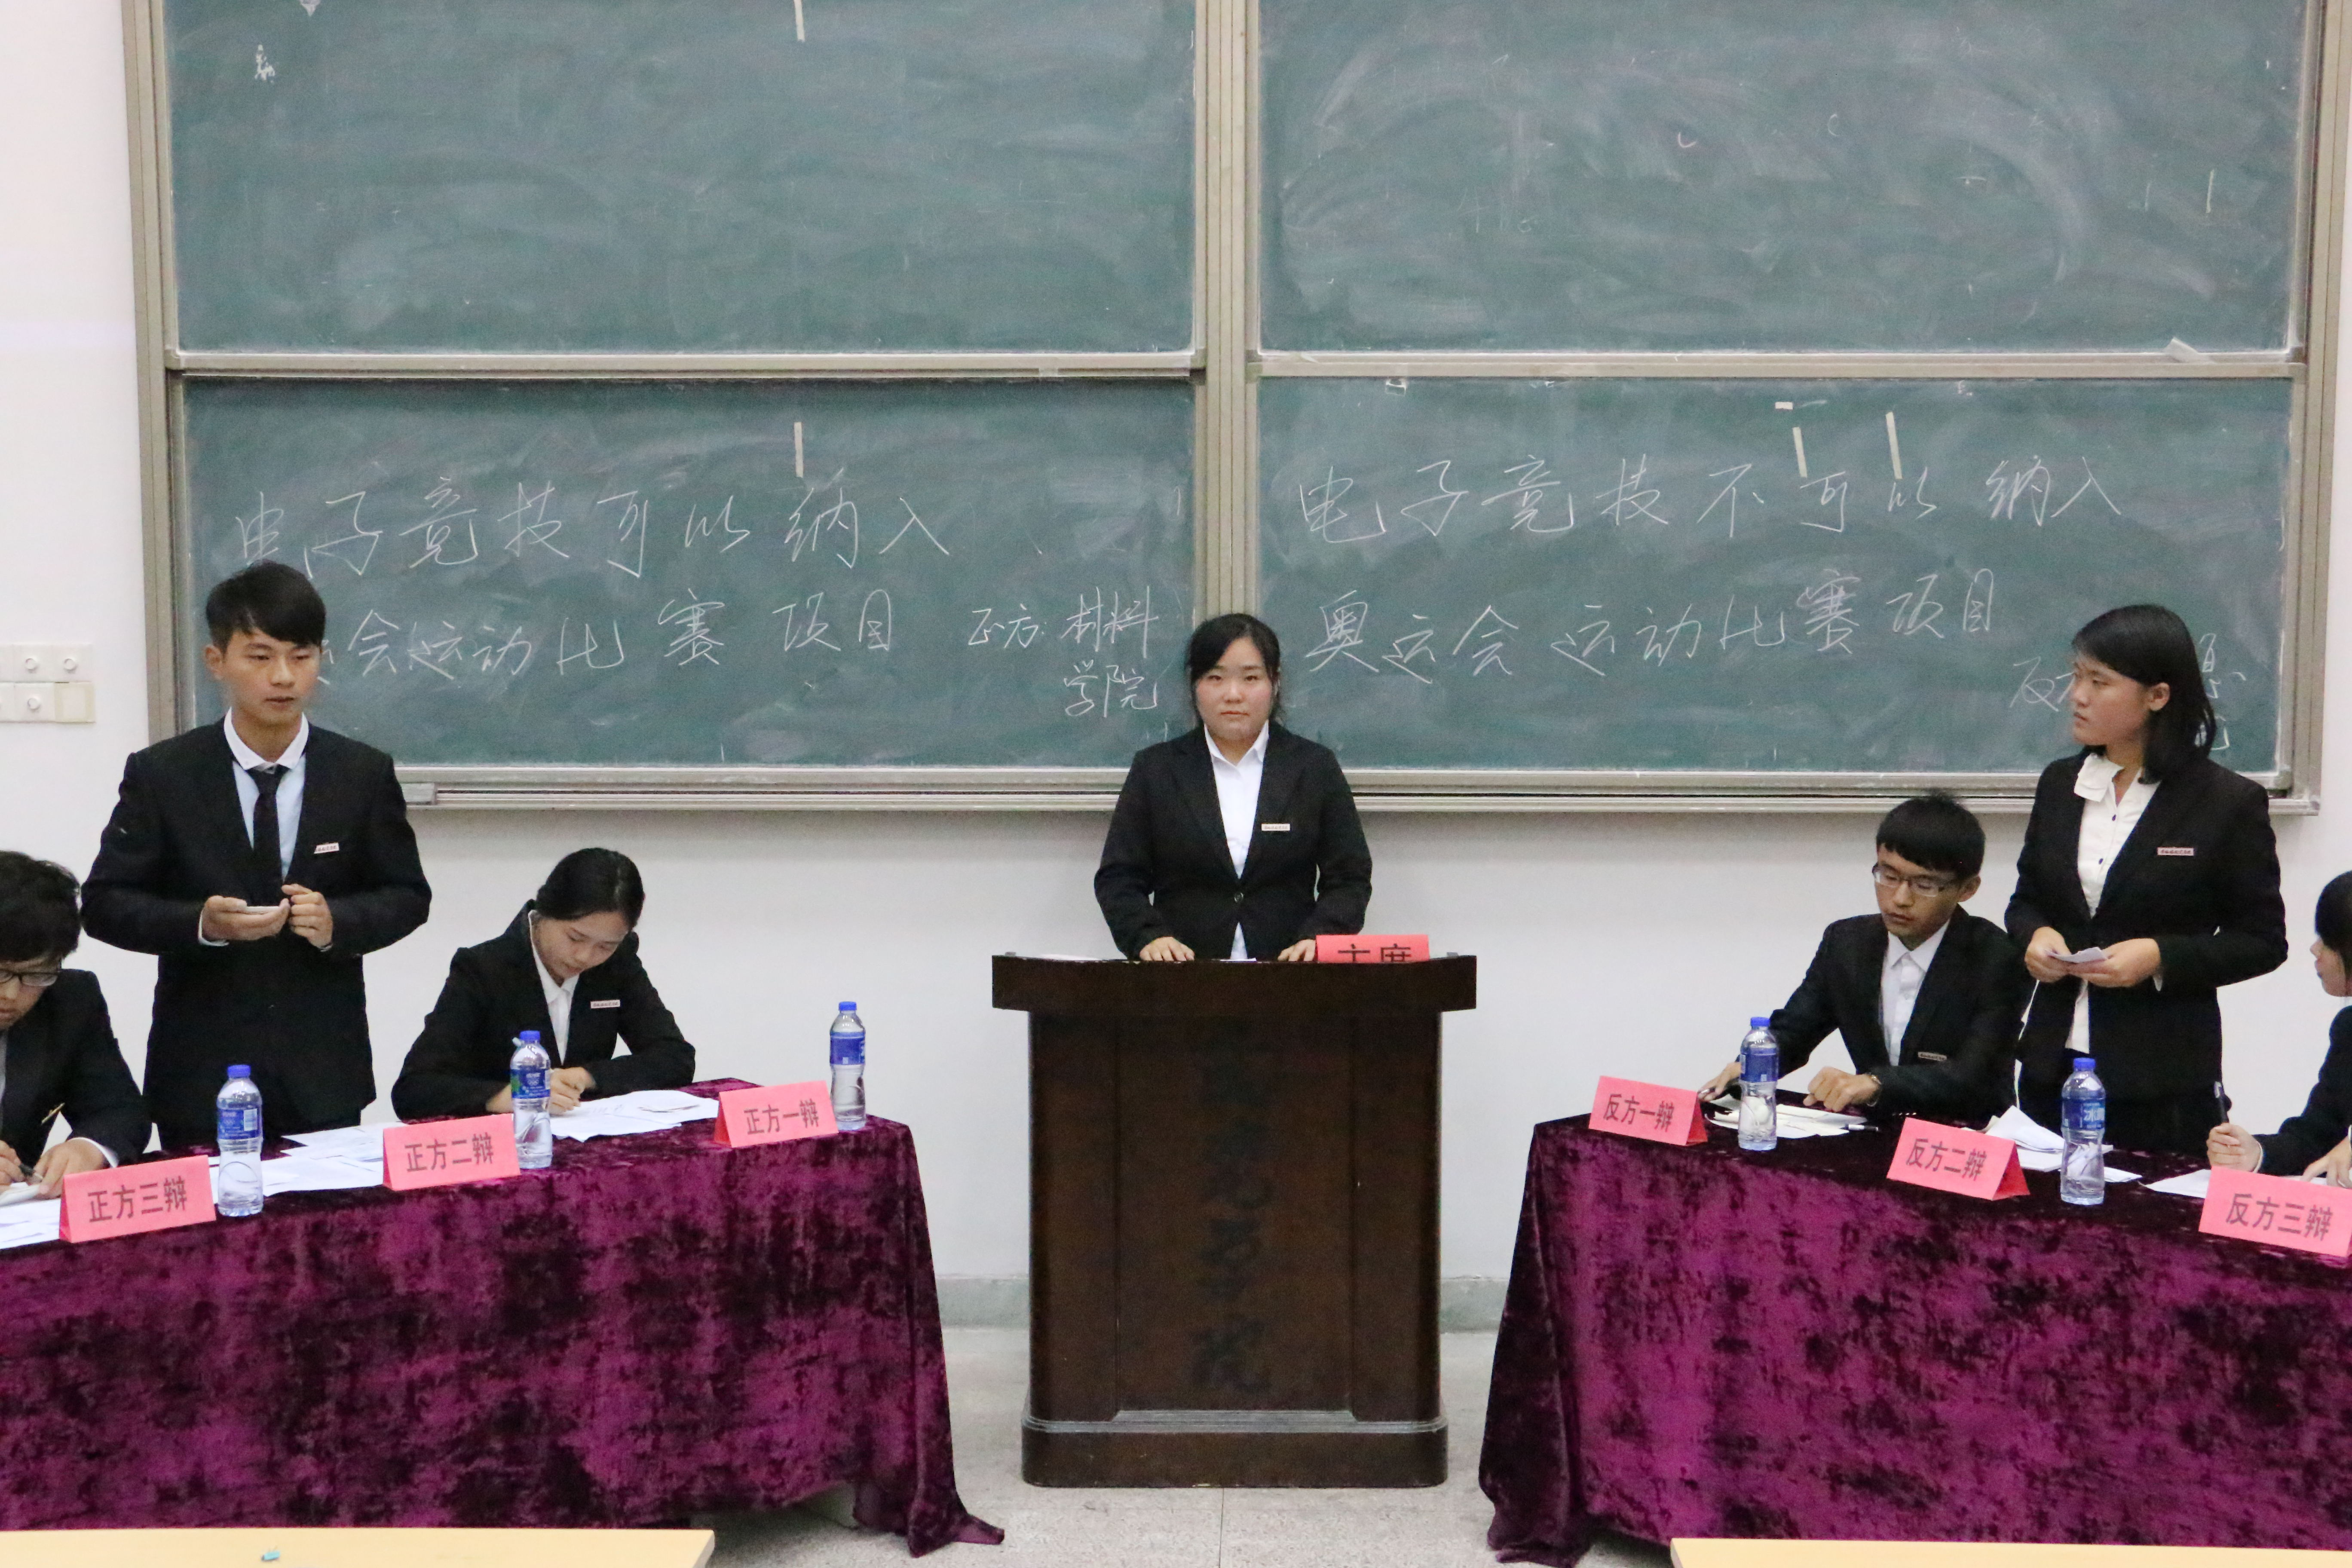 【材料学院】材料学院新生辩论赛顺利举行-共青团福州大学委员会